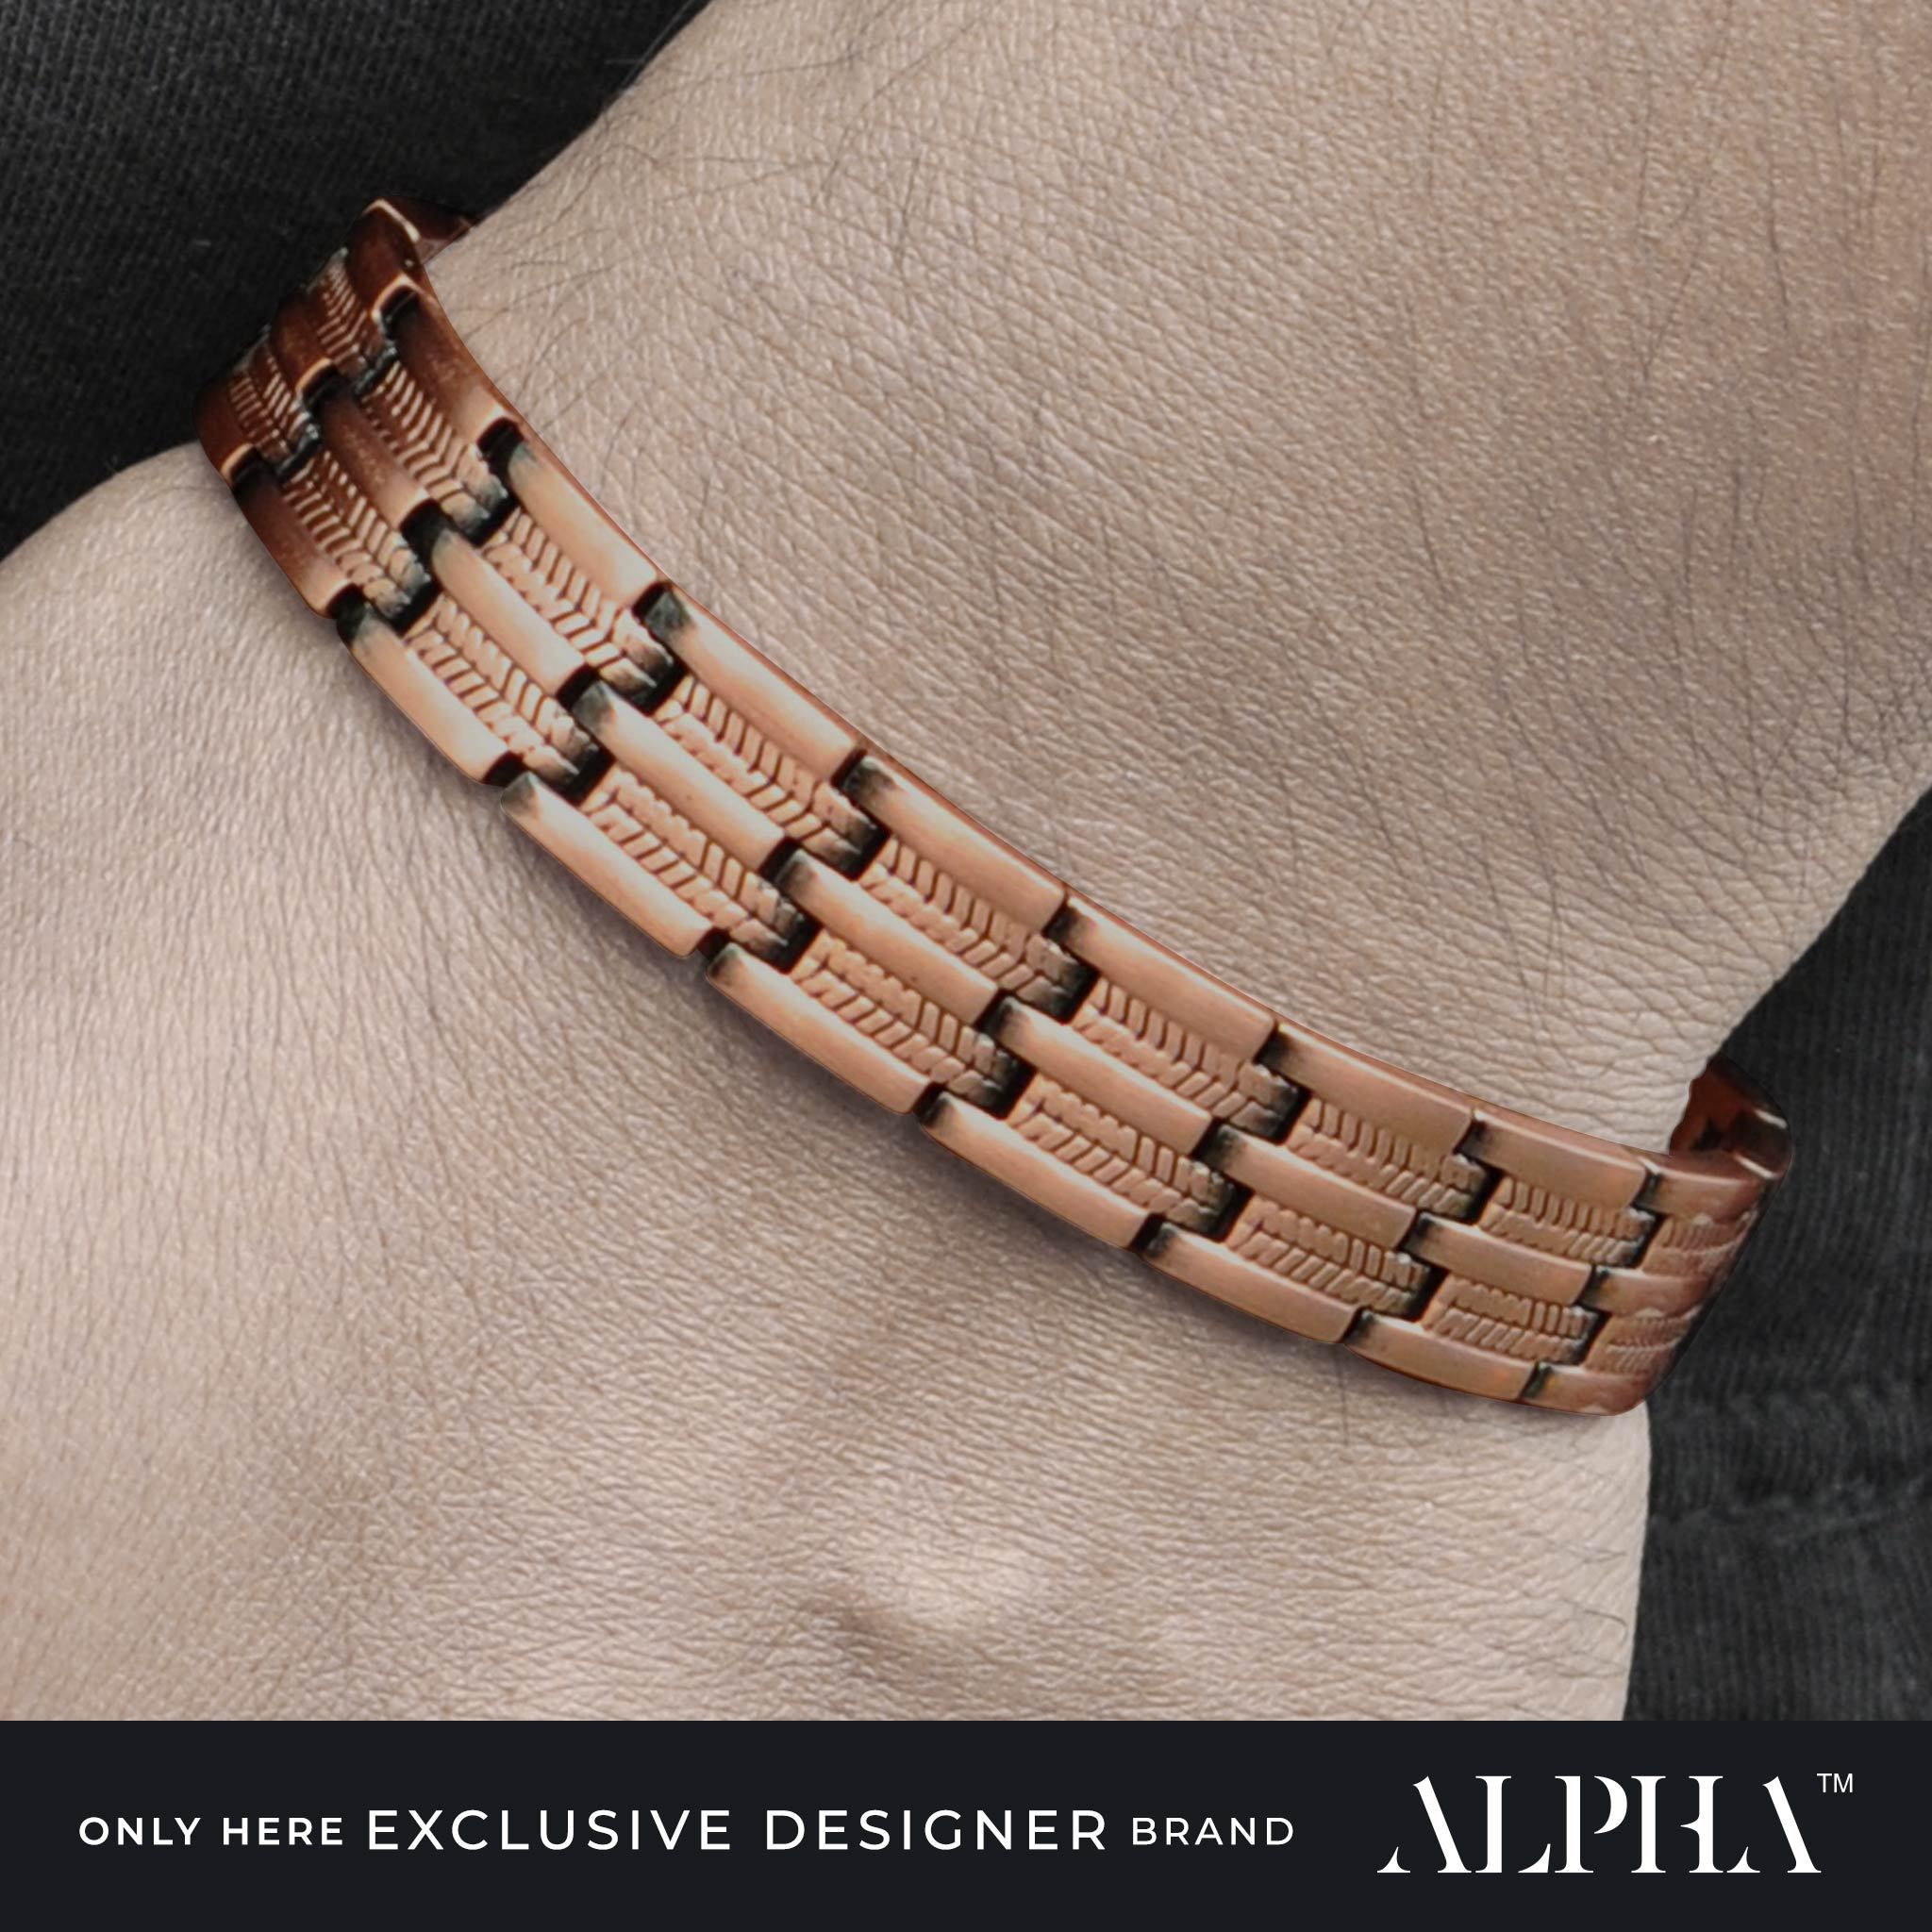 mens copper bracelet